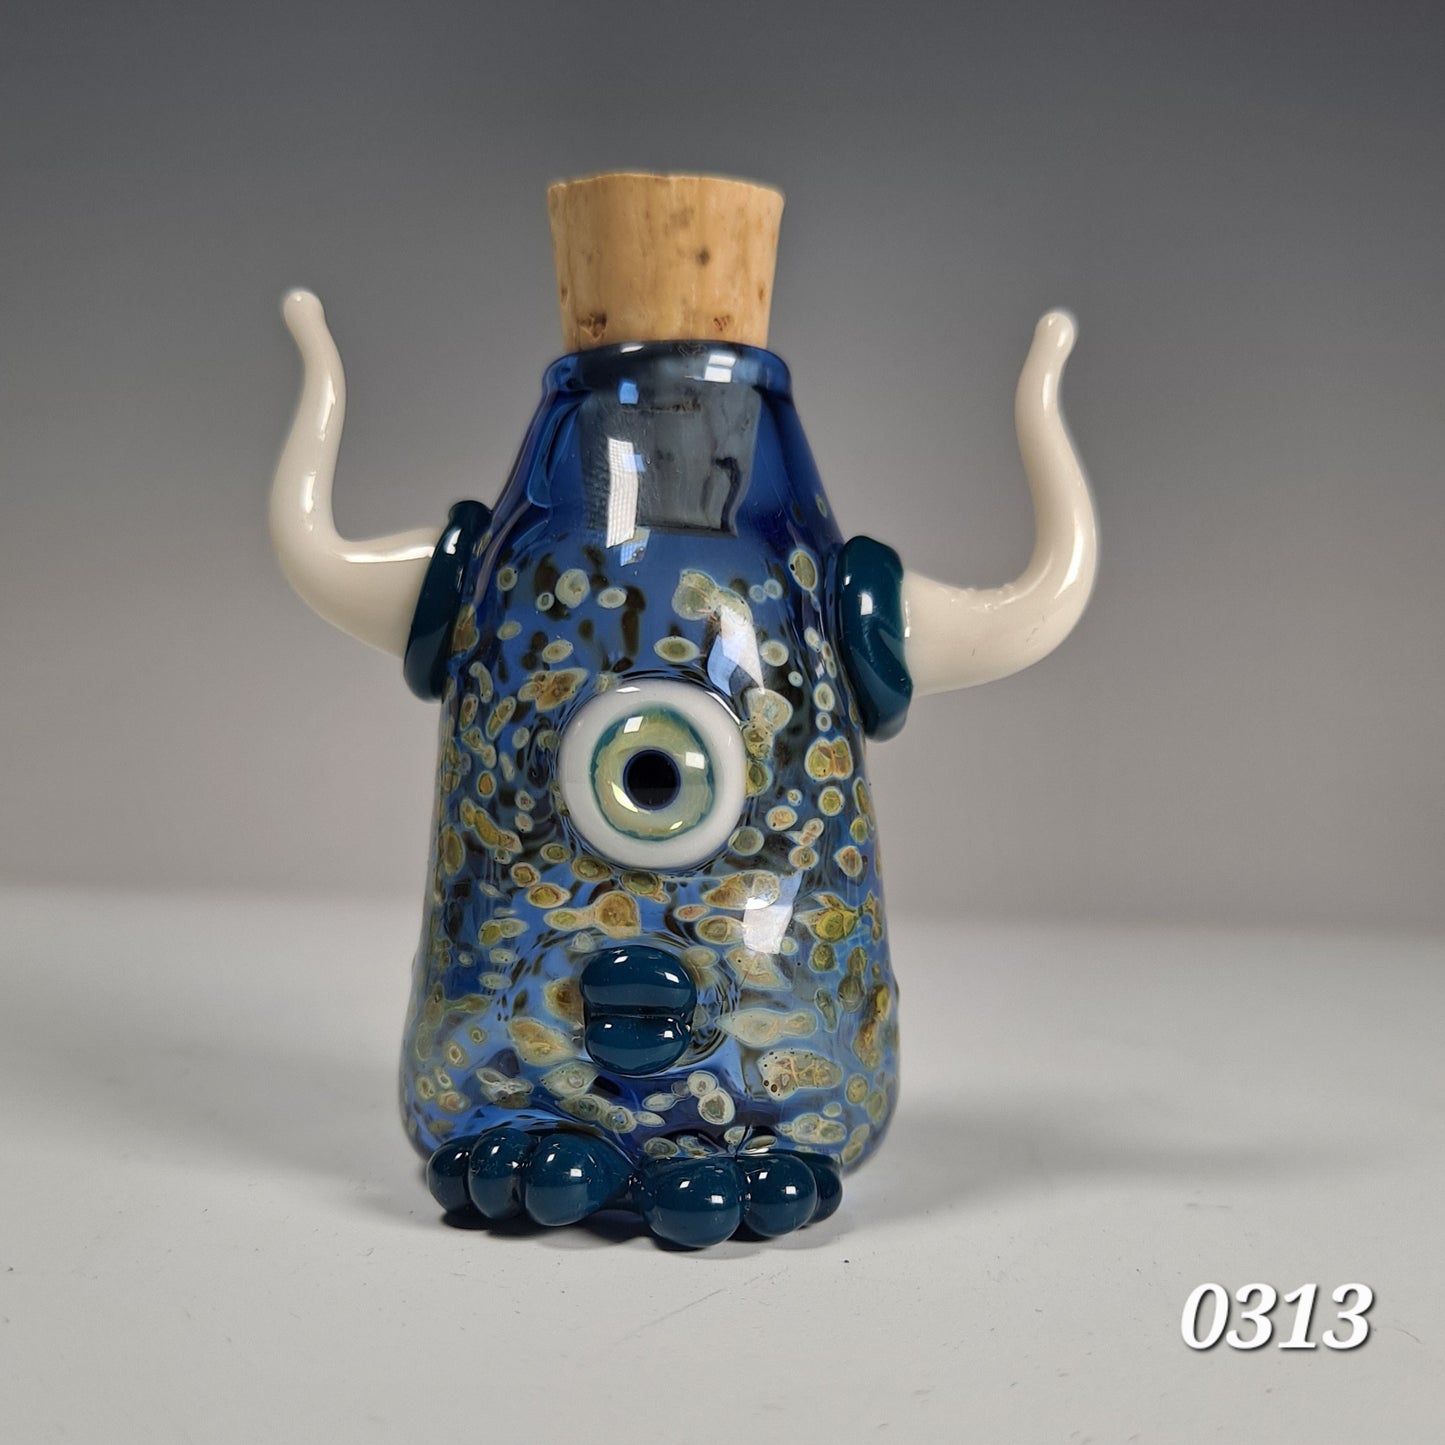 Eyeball Monster Potion Bottle Collection